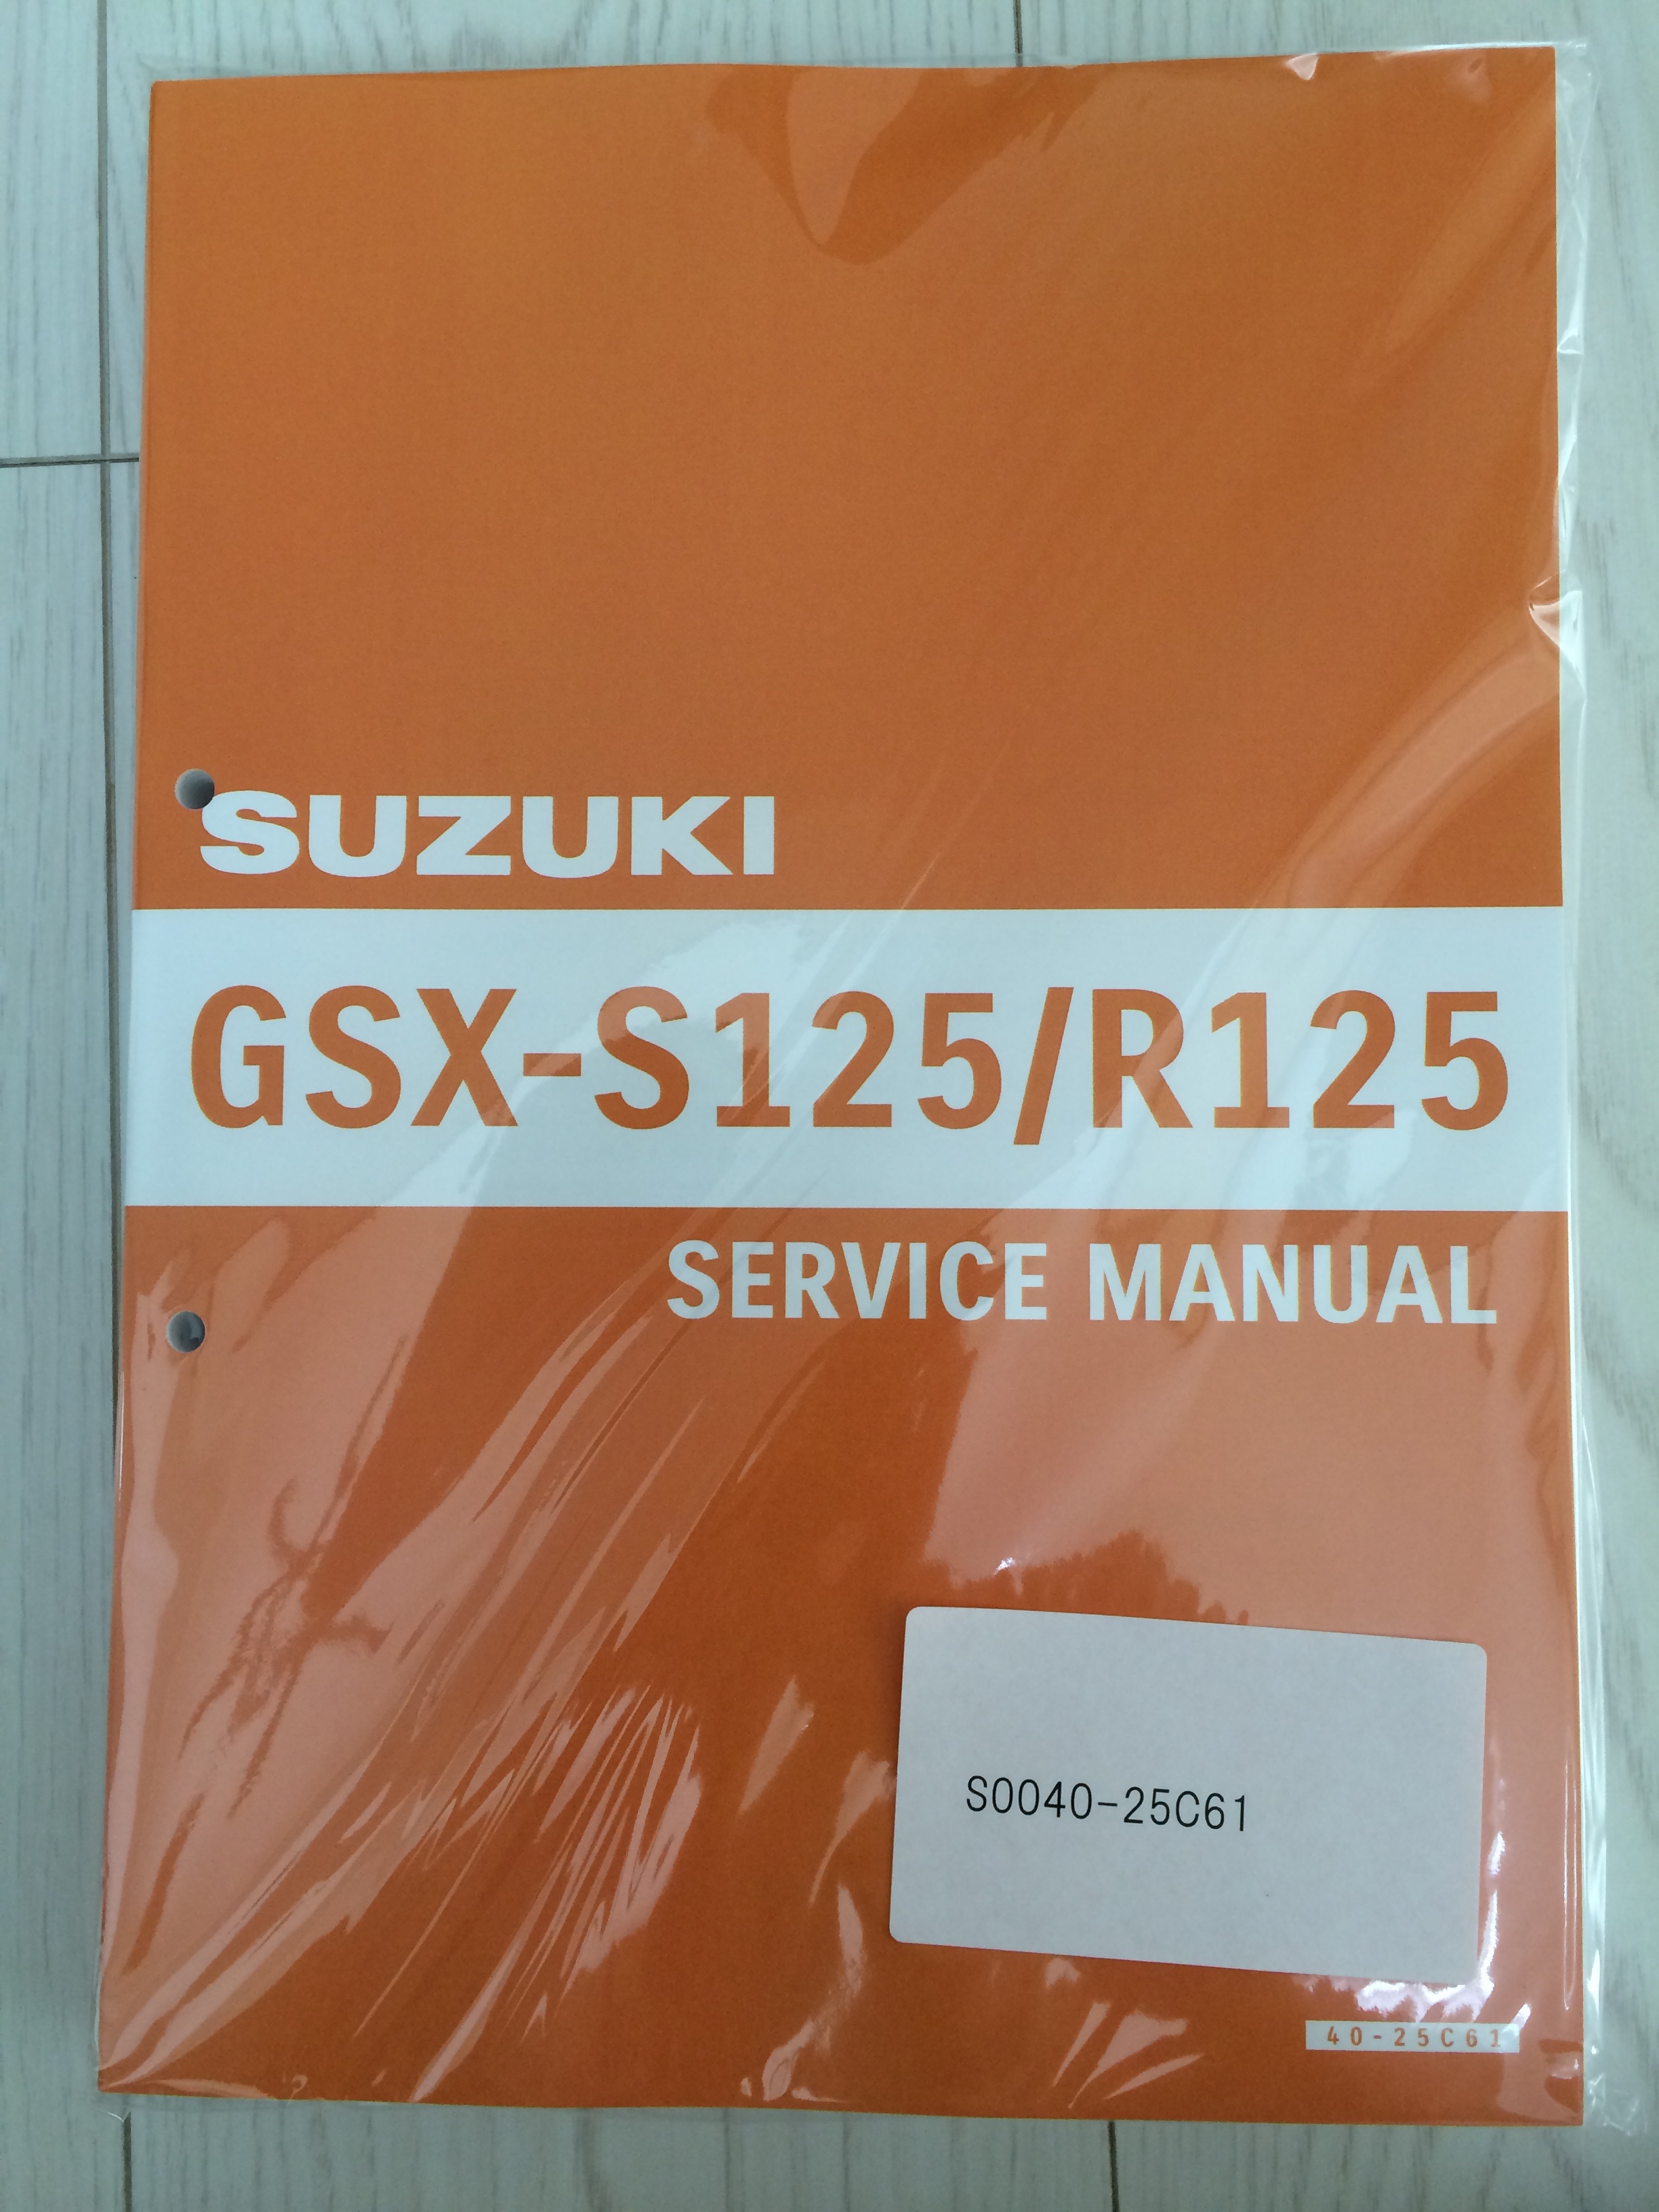 たいぞ～☆のブログ GSX-R125 サービスマニュアル